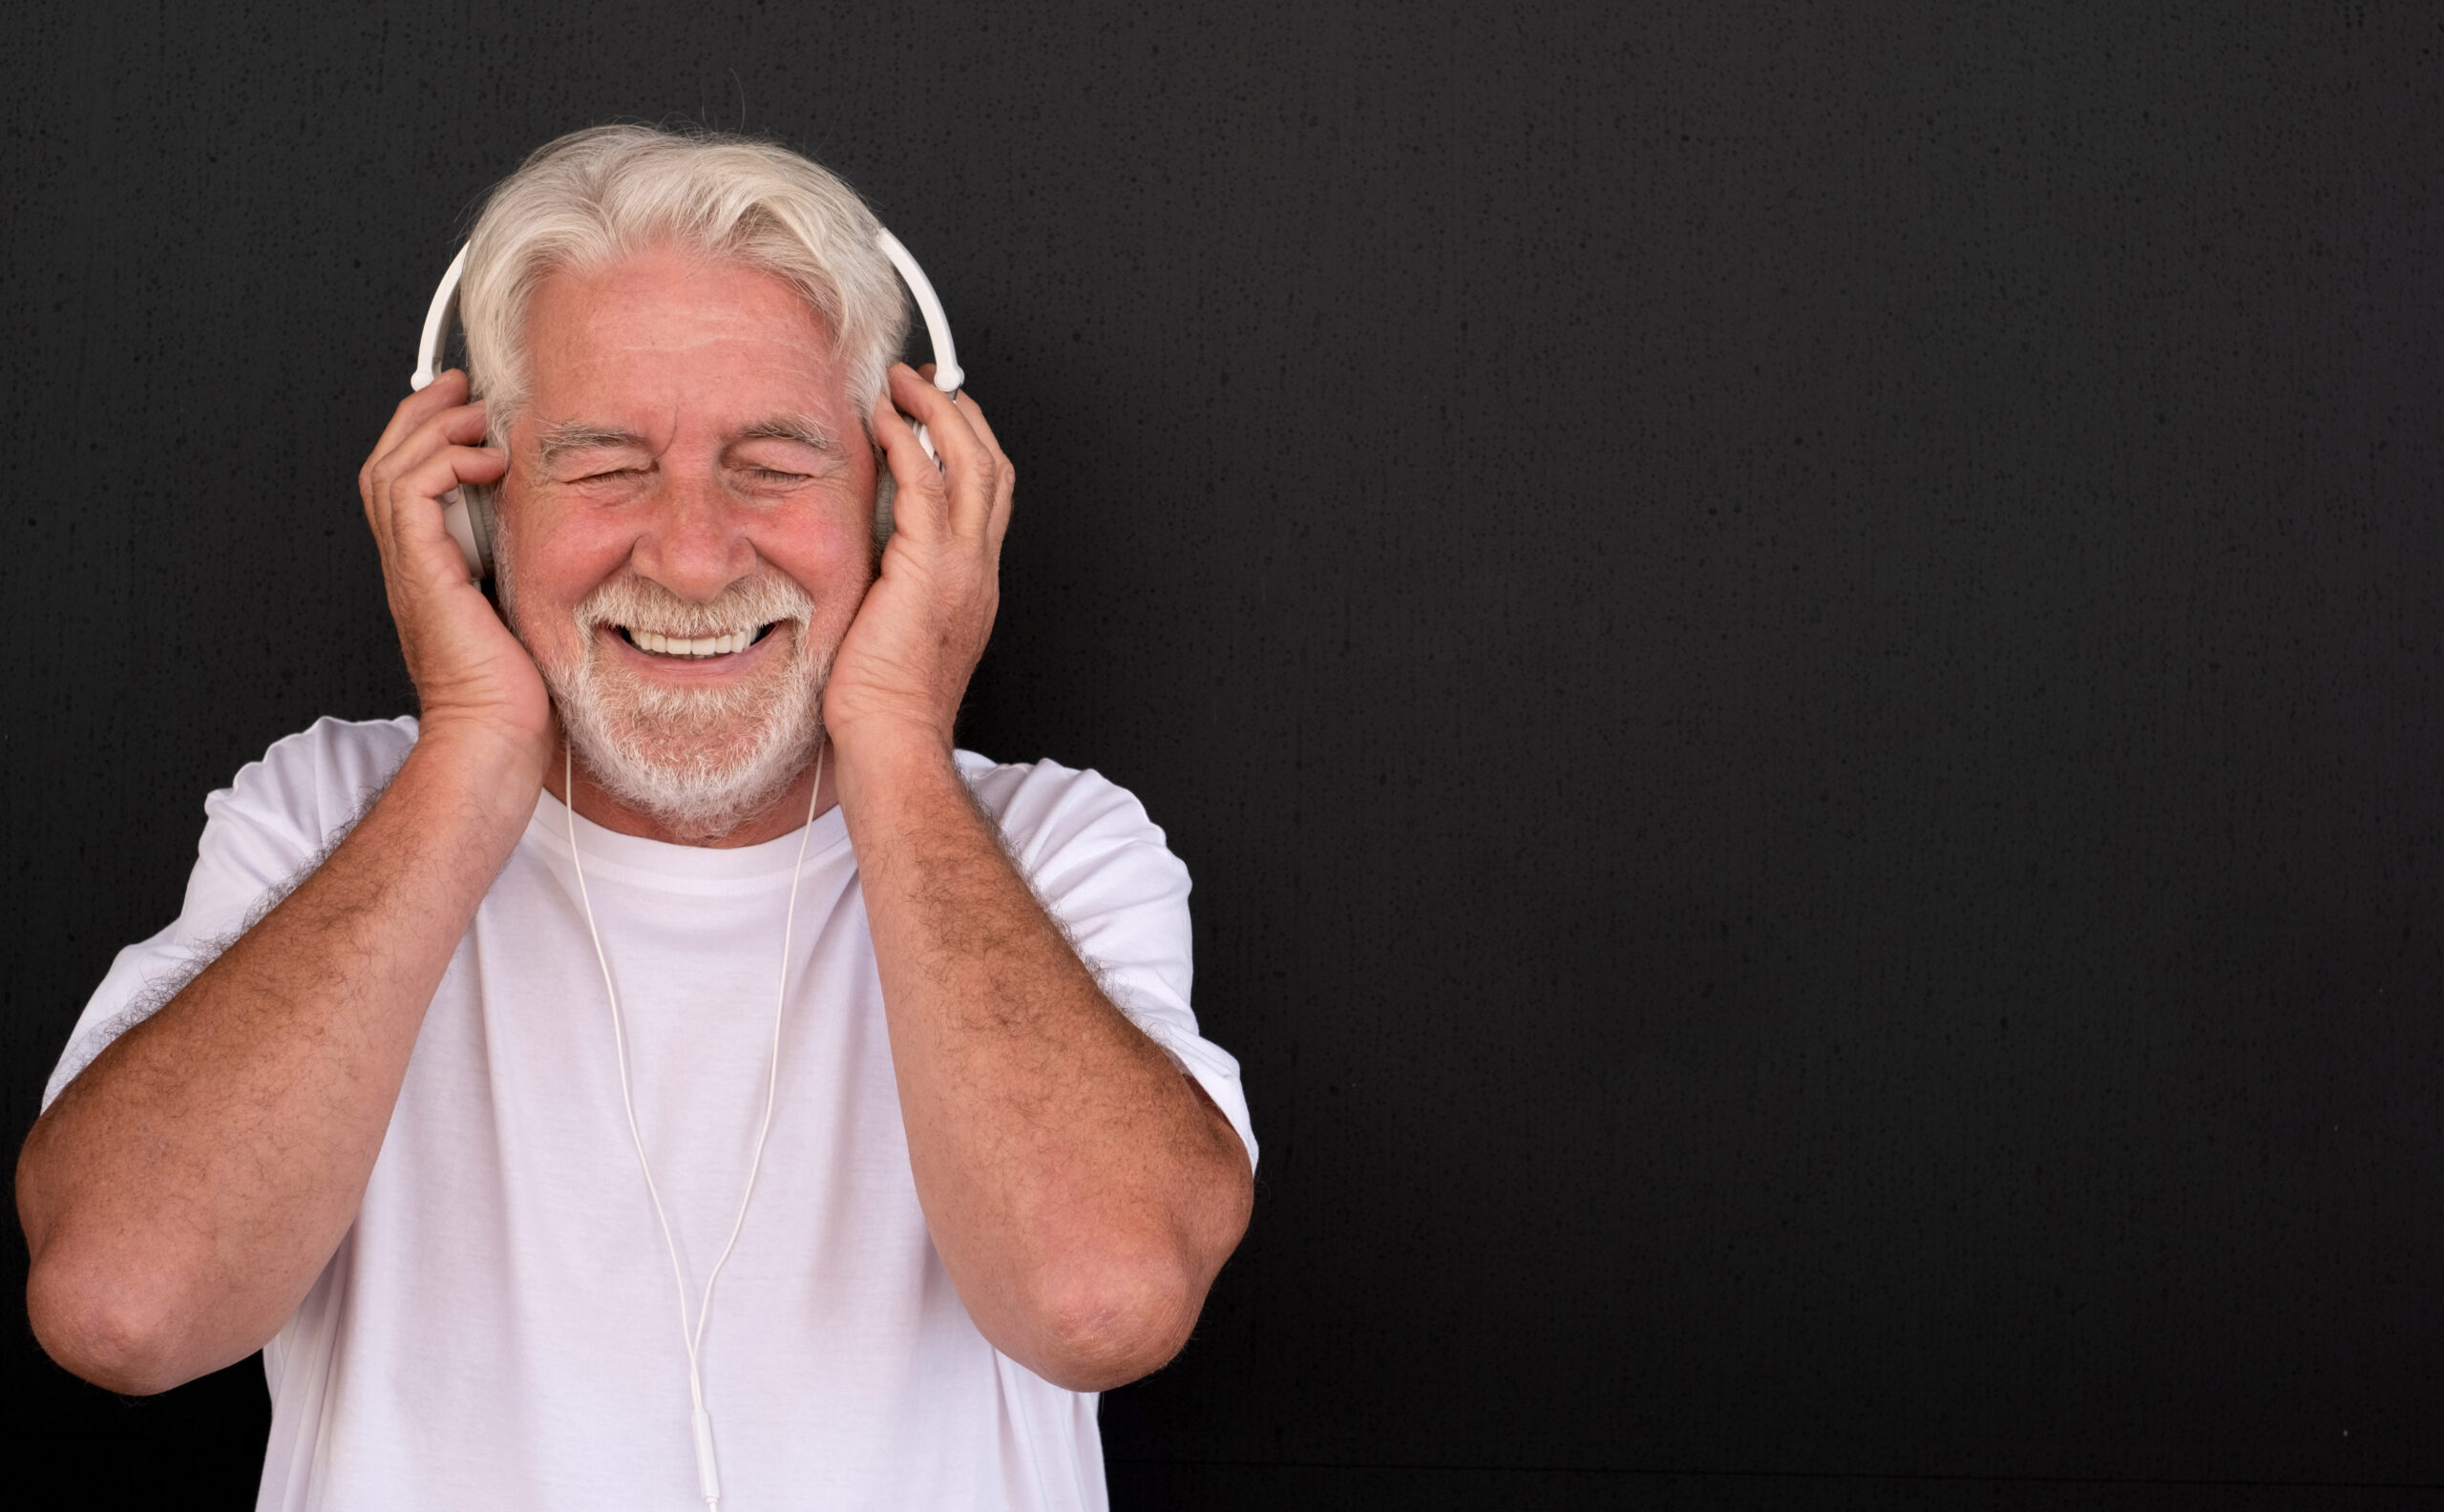 Man with headphones listening to audio magazine